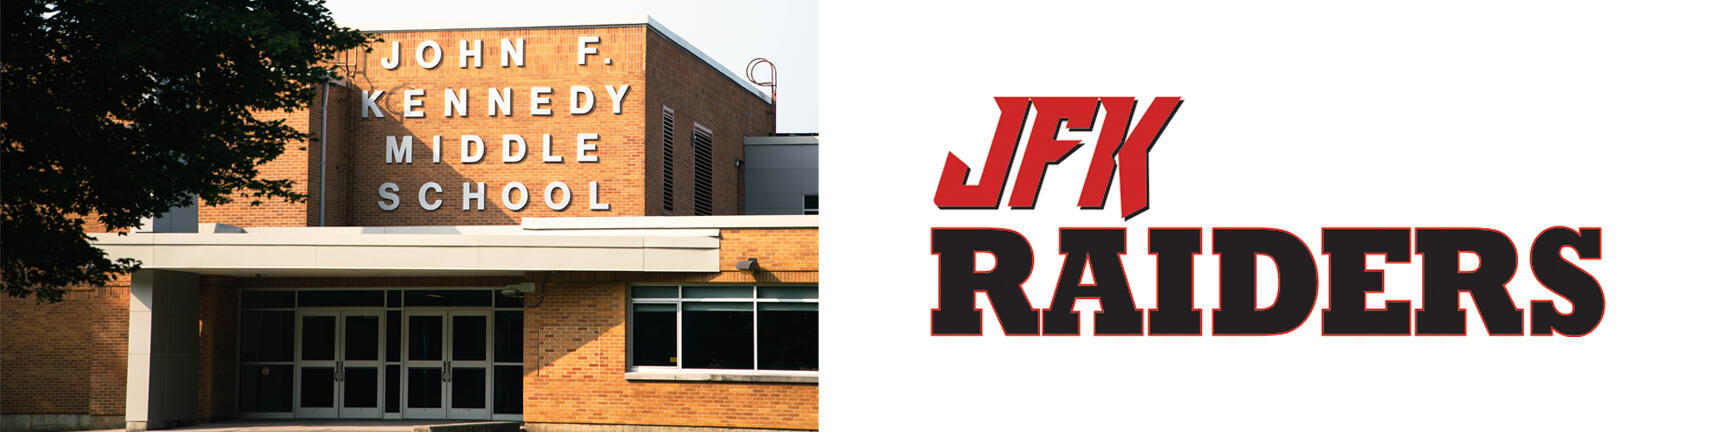 รูปภาพอาคารของโรงเรียน JFK และโลโก้ JFK Raiders